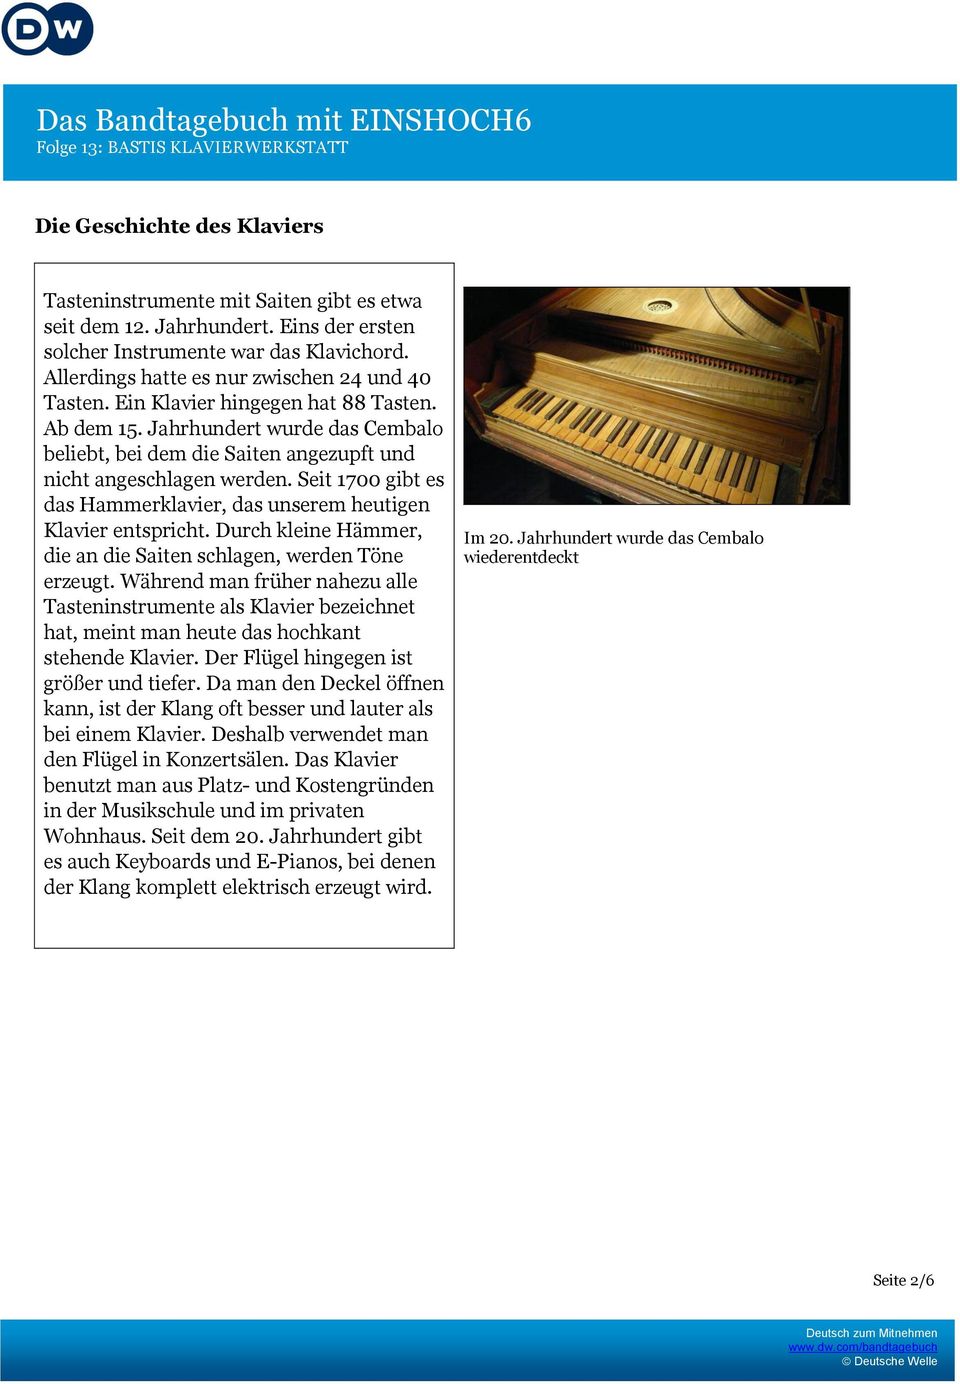 Seit 1700 gibt es das Hammerklavier, das unserem heutigen Klavier entspricht. Durch kleine Hämmer, die an die Saiten schlagen, werden Töne erzeugt.